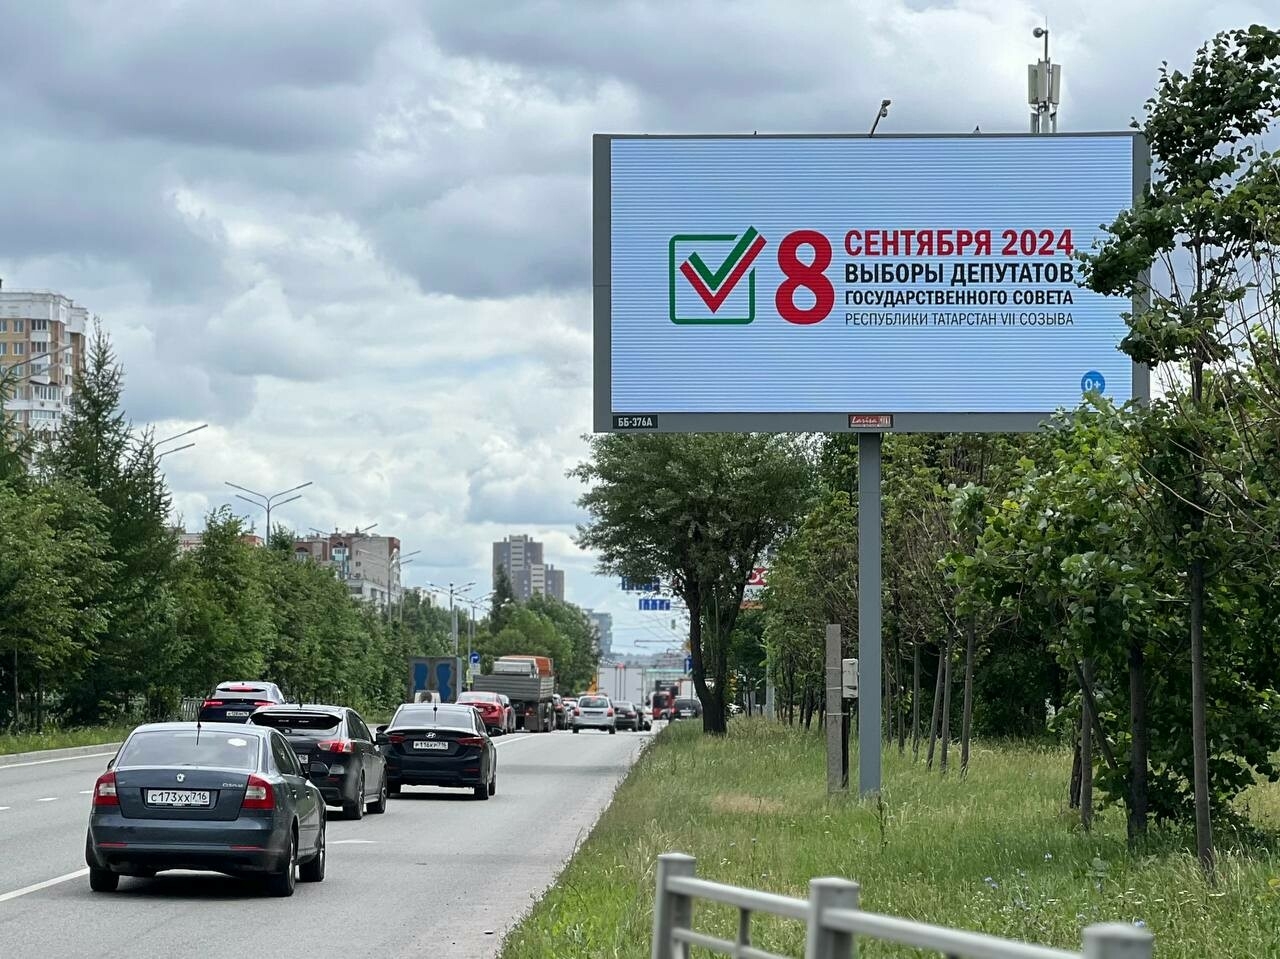 На билбордах в городах Татарстана появилась информация о выборах в Госсовет